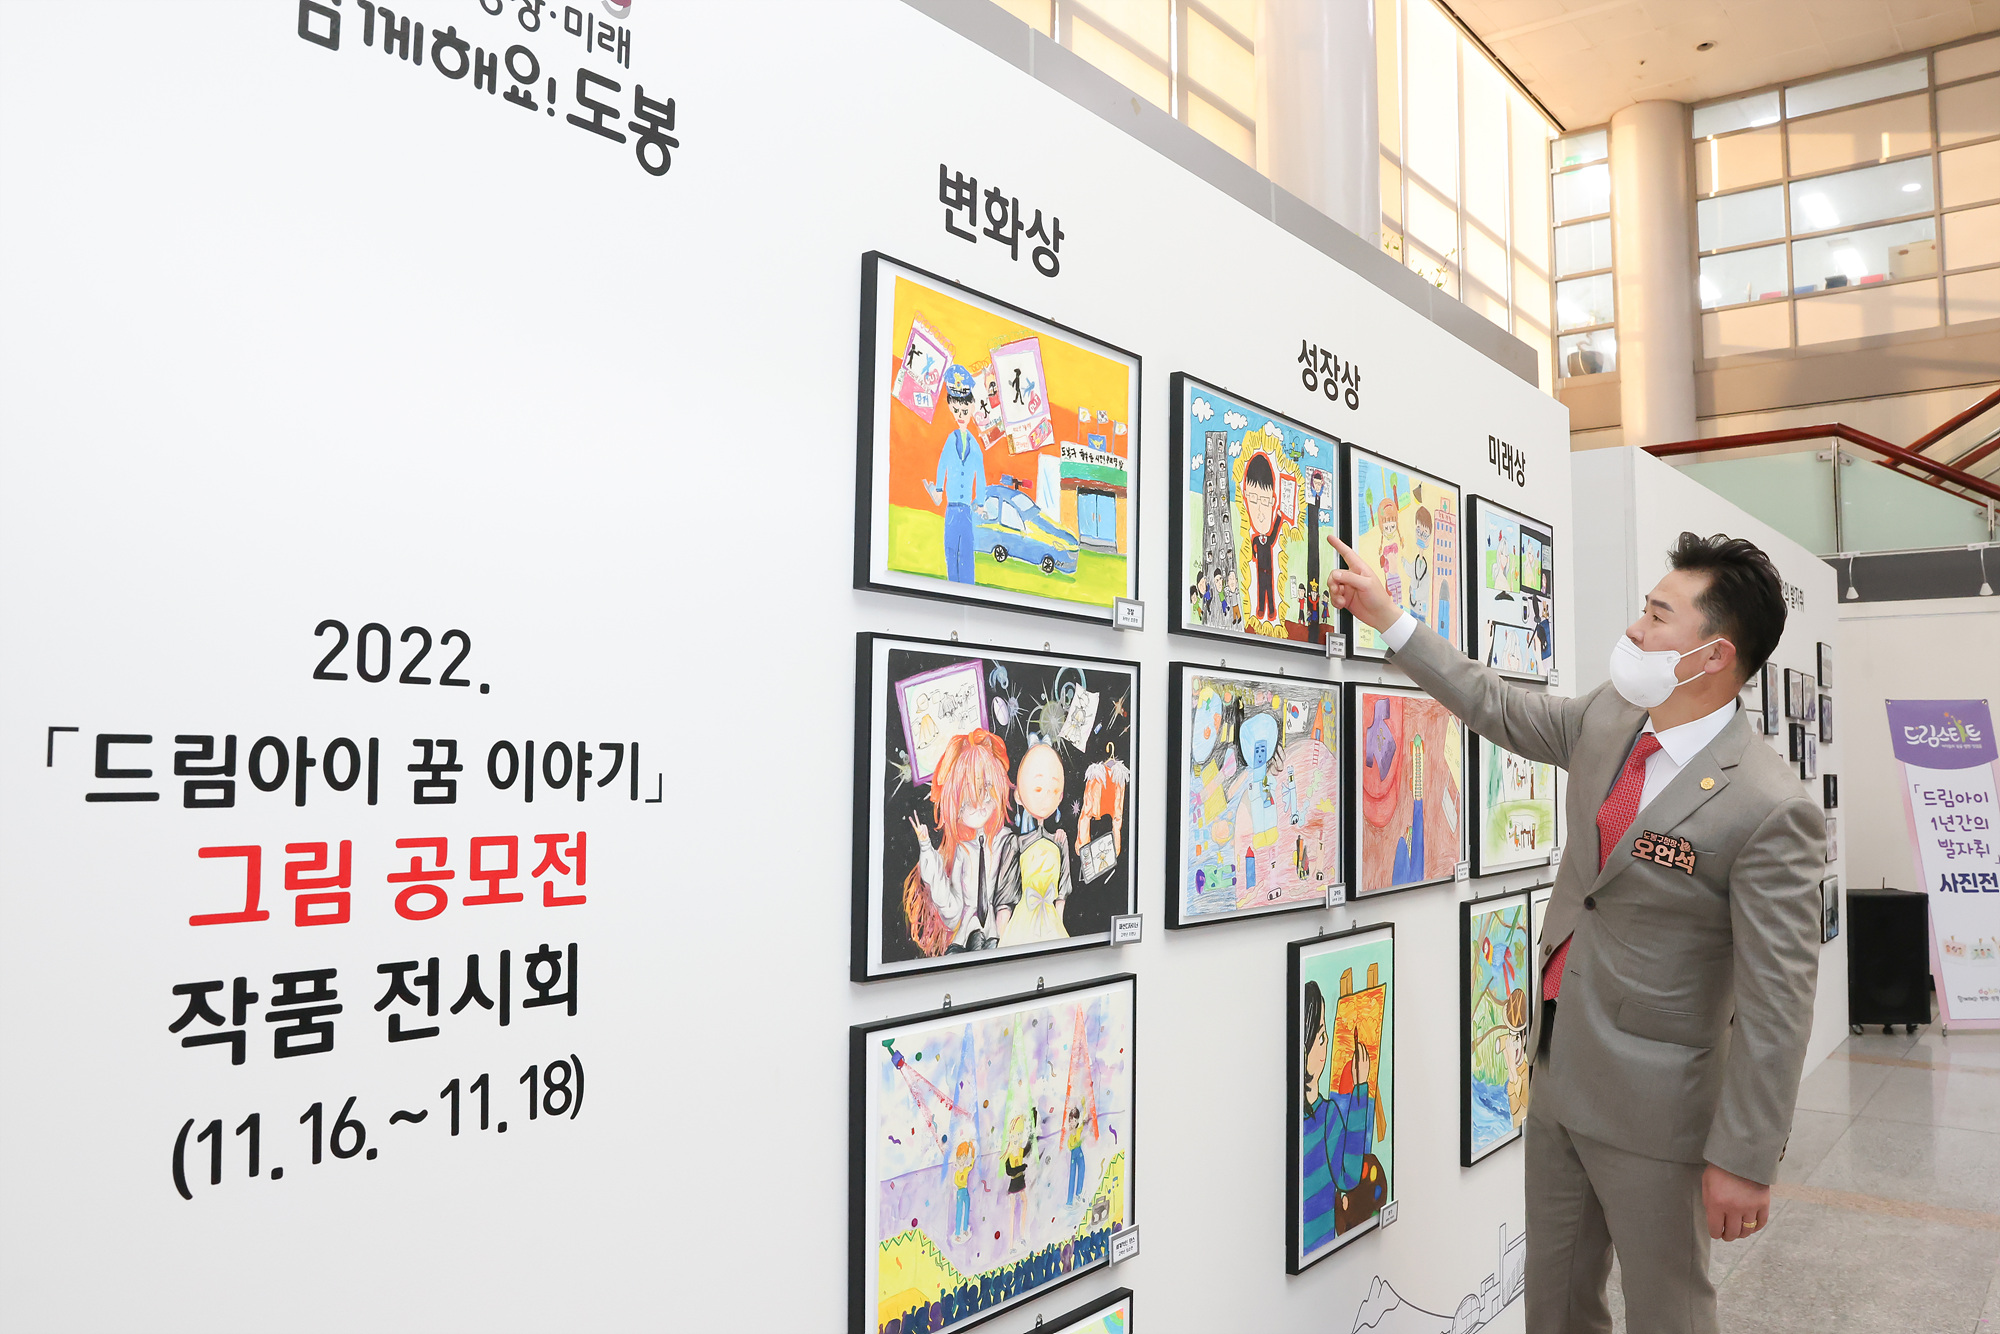 2022 <드림아이 꿈 이야기> 그림공모전 작품 전시회 해당 썸네일입니다